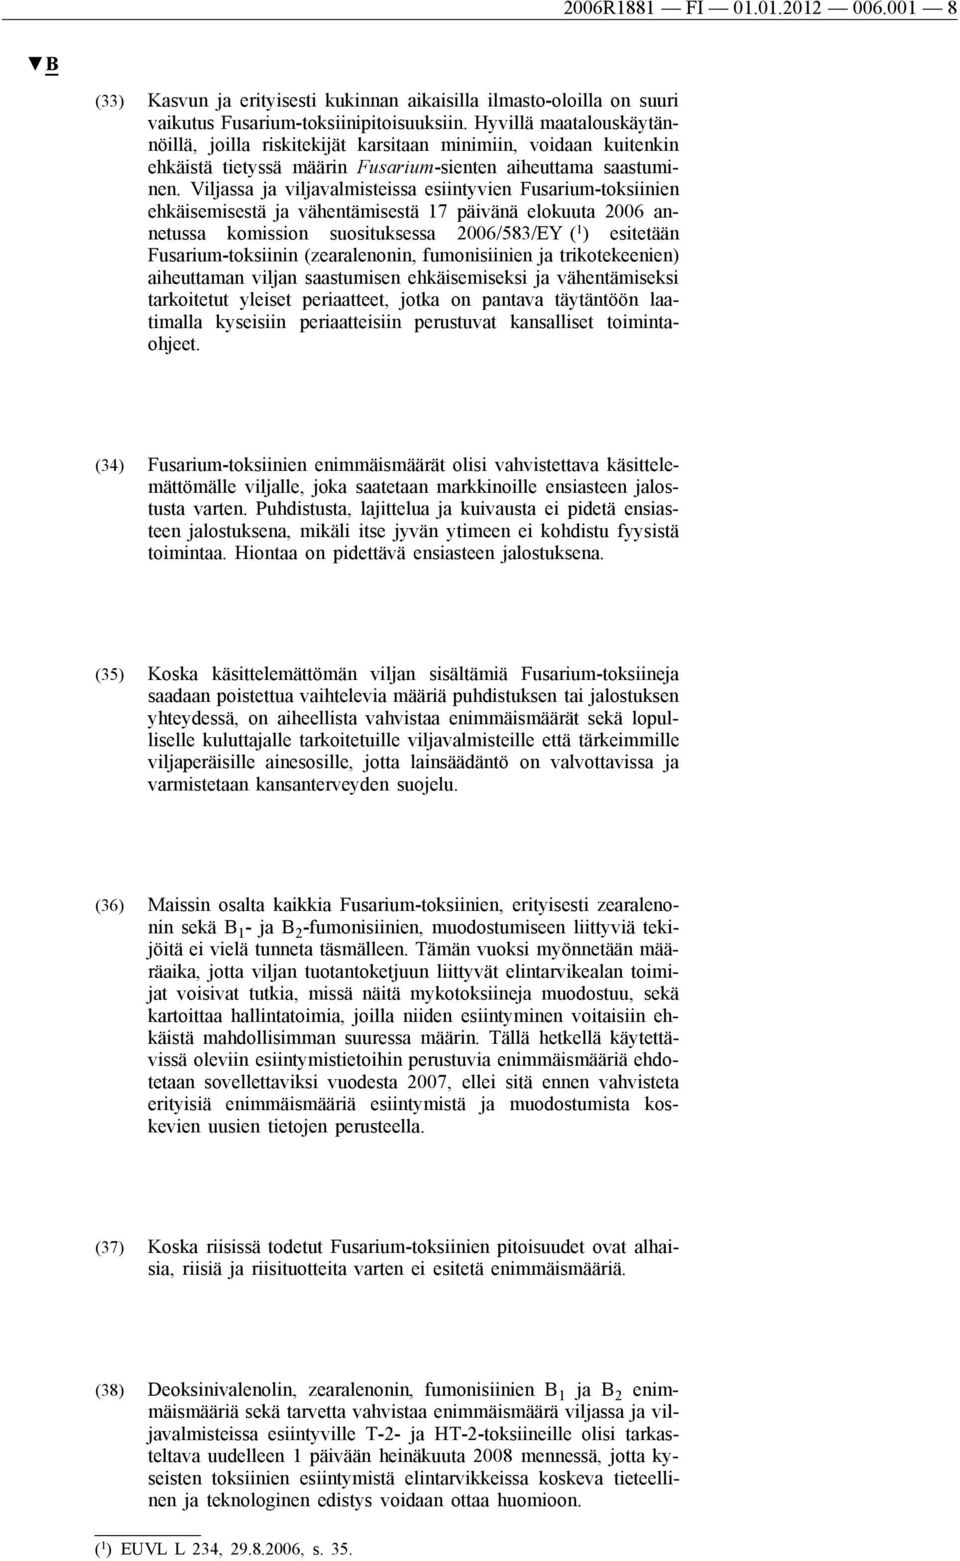 Viljassa ja viljavalmisteissa esiintyvien Fusarium-toksiinien ehkäisemisestä ja vähentämisestä 17 päivänä elokuuta 2006 annetussa komission suosituksessa 2006/583/EY ( 1 ) esitetään